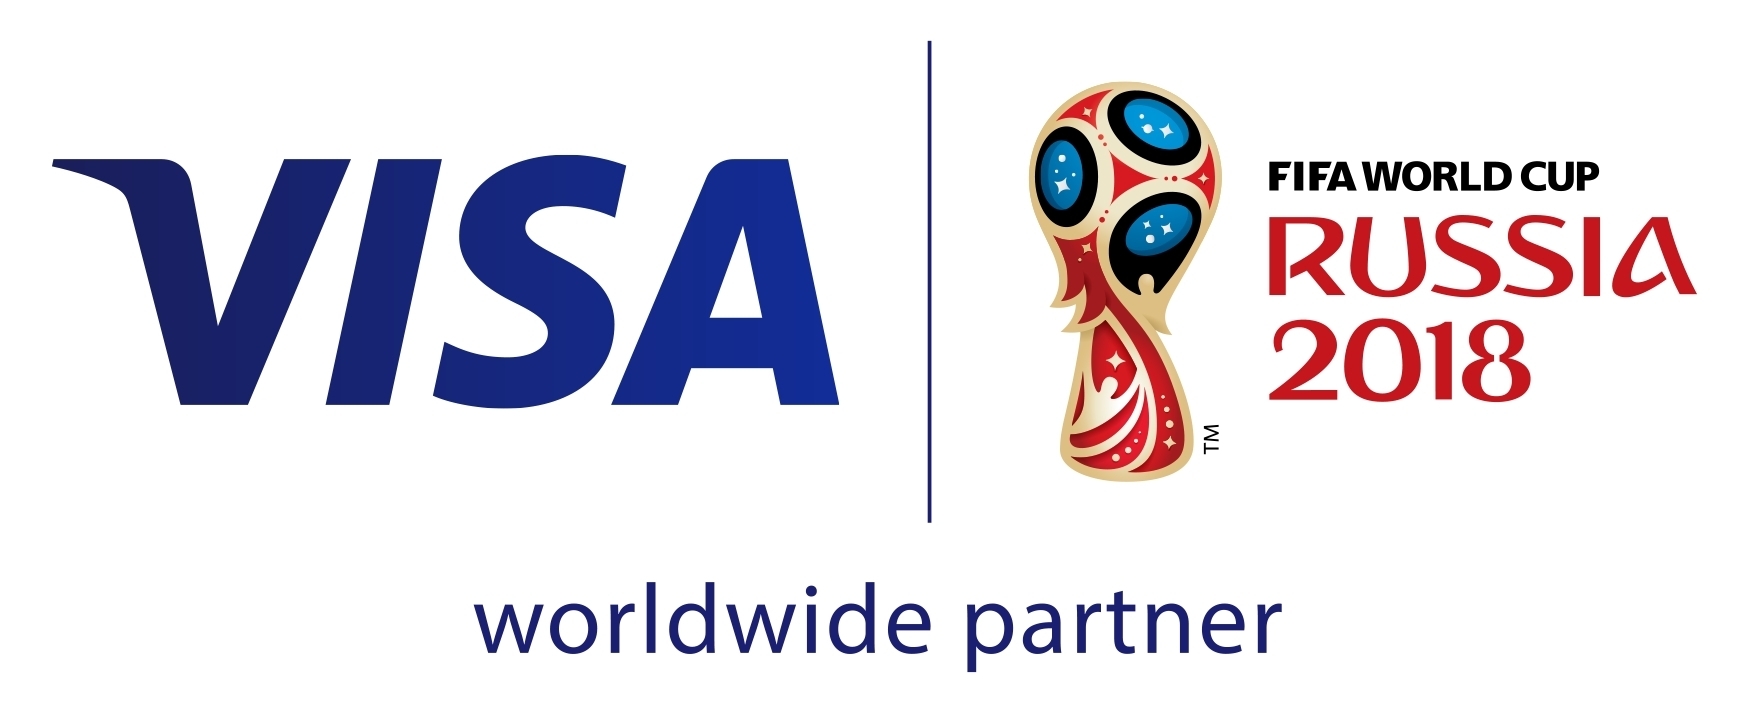 único Restricción vídeo Los fanáticos ganaron con Visa en la Copa Mundial de la FIFA Rusia 2018™ |  Business Wire